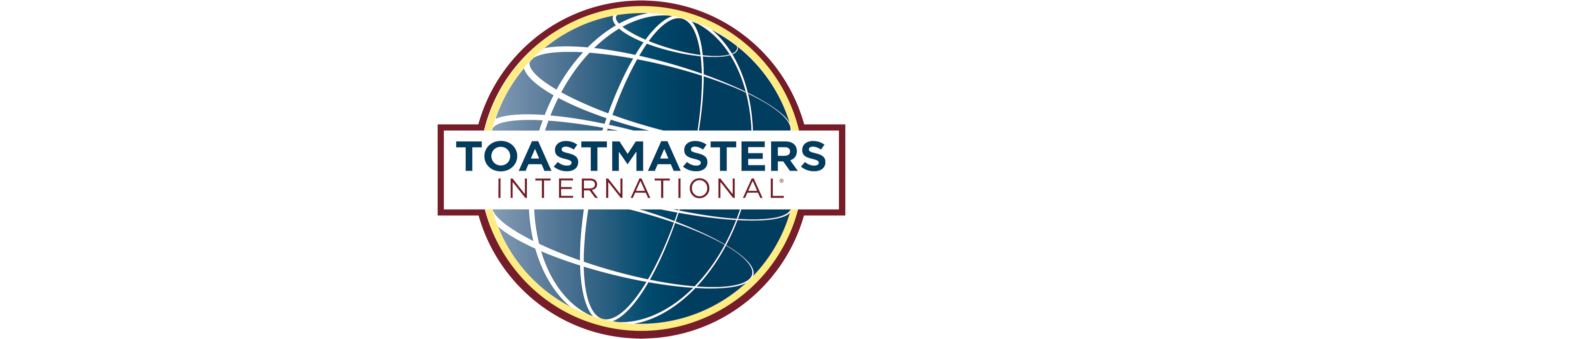 Distrito 113 de Toastmasters International®